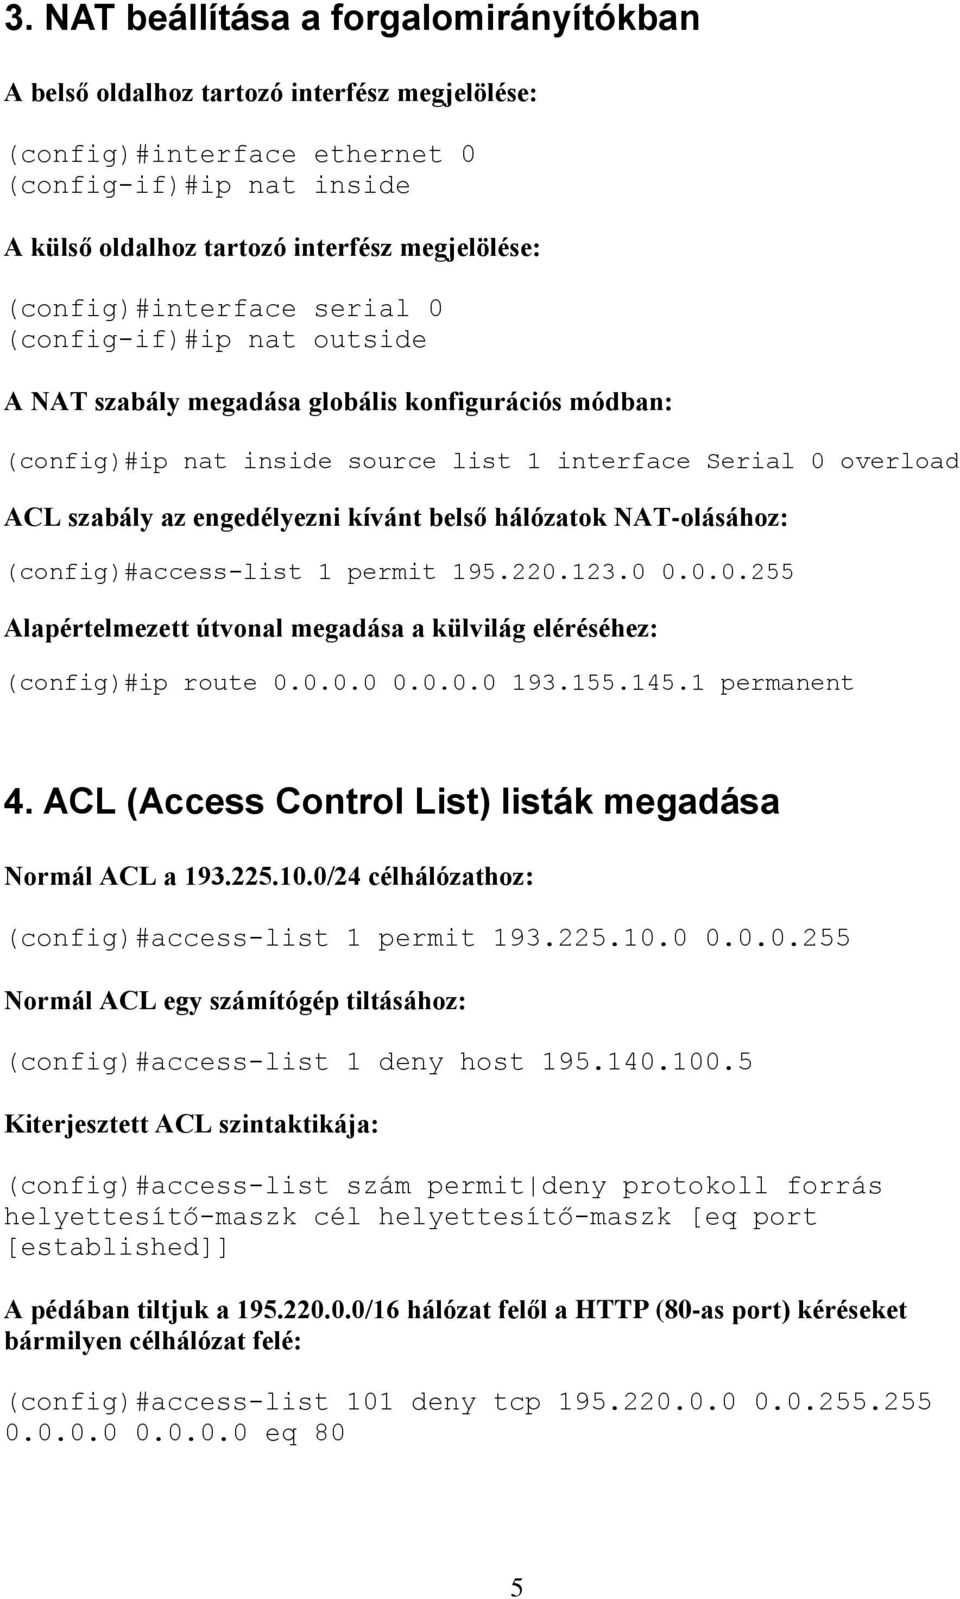 engedélyezni kívánt belső hálózatok NAT-olásához: (config)#access-list 1 permit 195.220.123.0 0.0.0.255 Alapértelmezett útvonal megadása a külvilág eléréséhez: (config)#ip route 0.0.0.0 0.0.0.0 193.